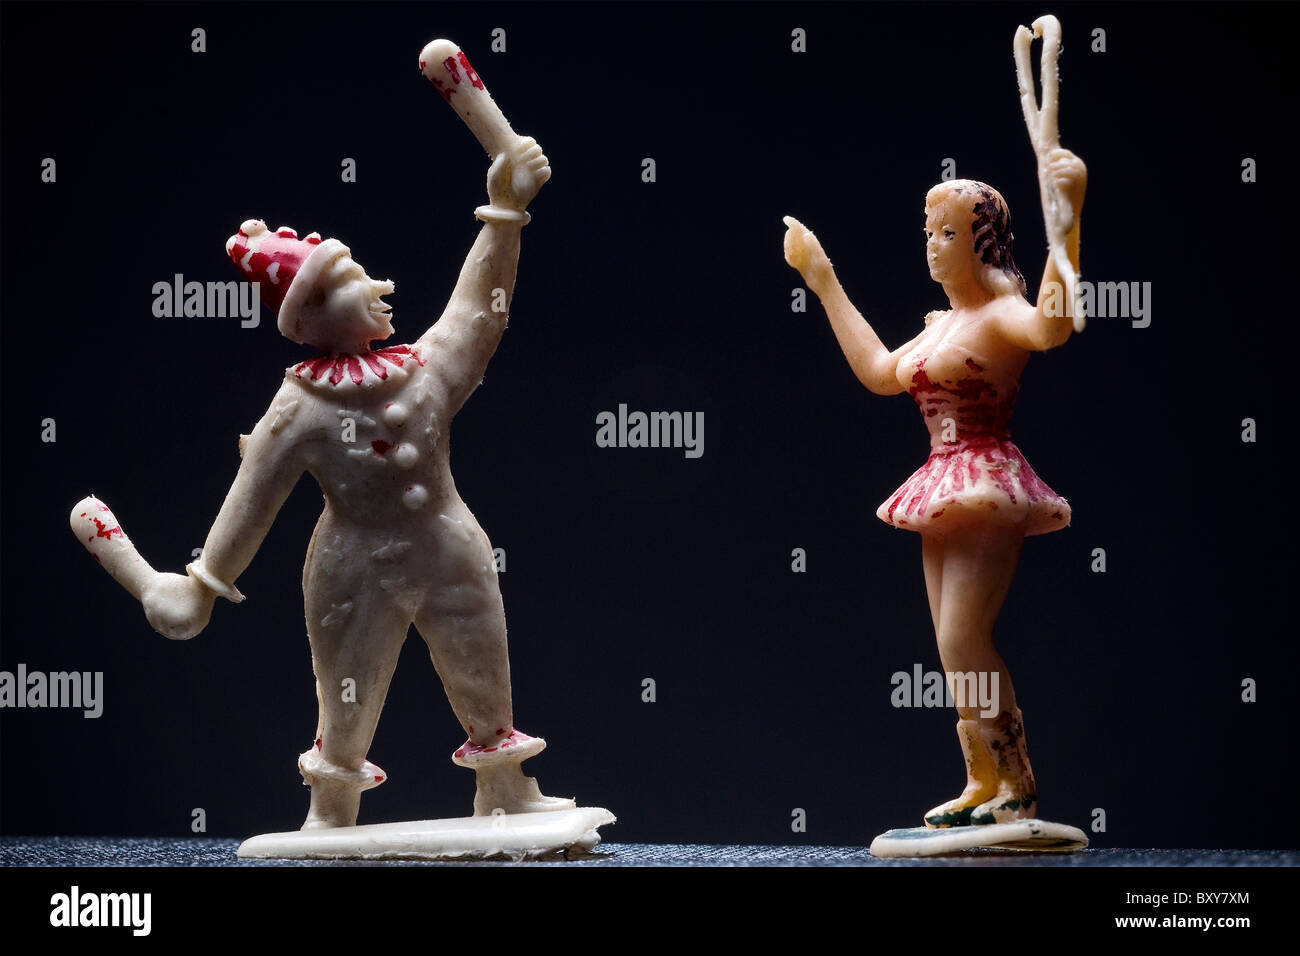 Figurines de cirque - jongleur et un lion tamer - sur un fond sombre Banque D'Images